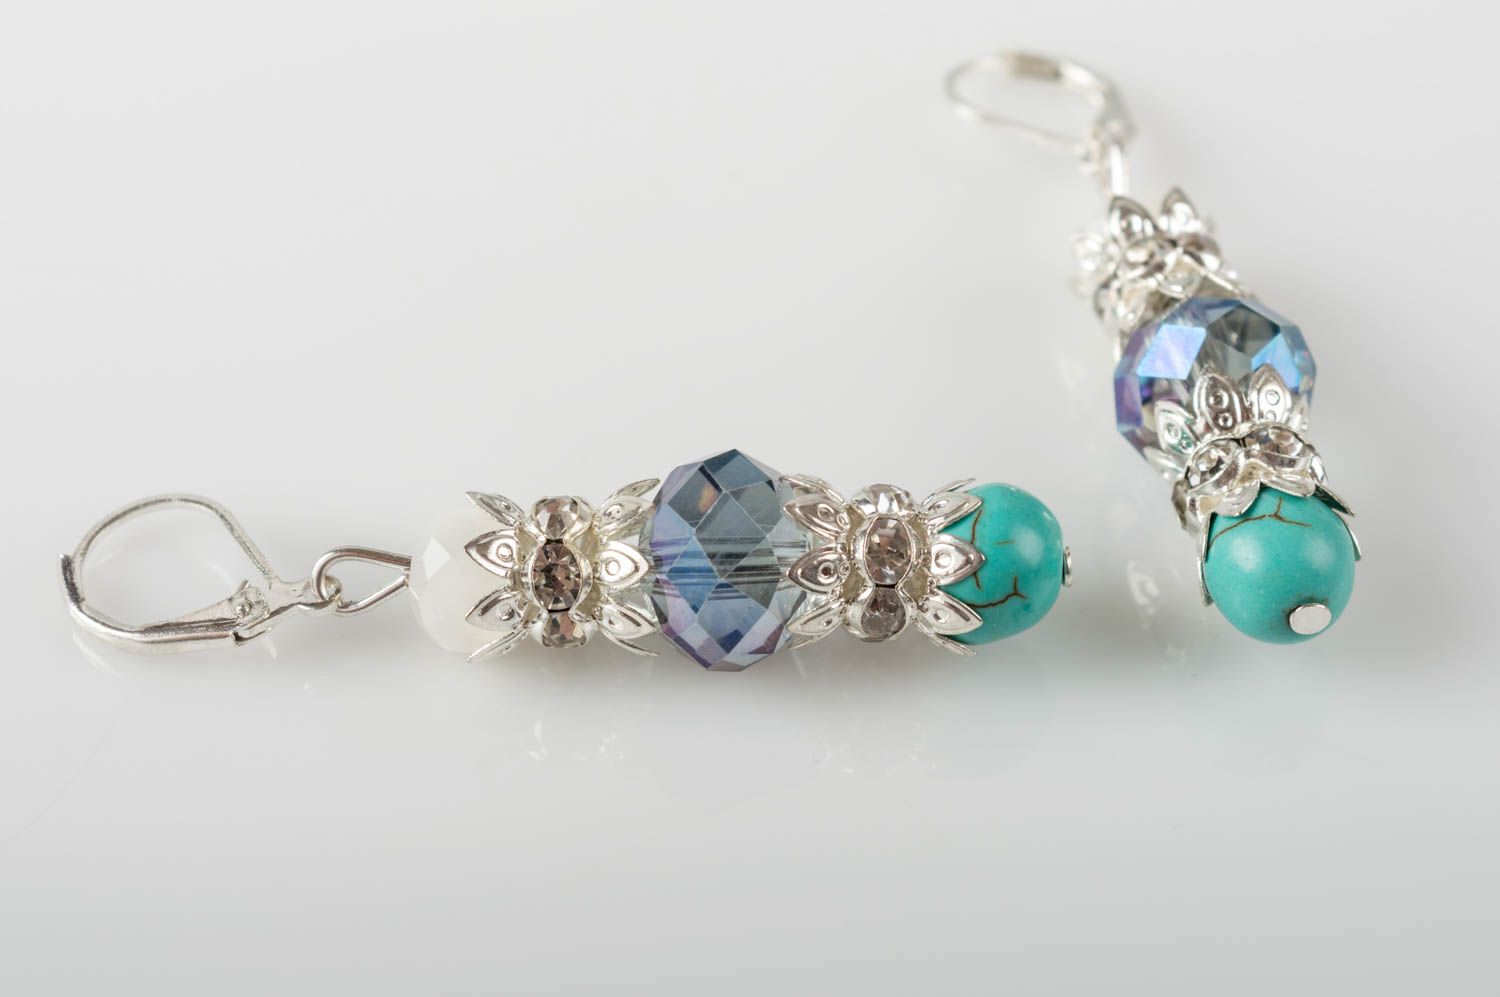 Small handmade gemstone earrings designer crystal earrings gifts for her photo 4